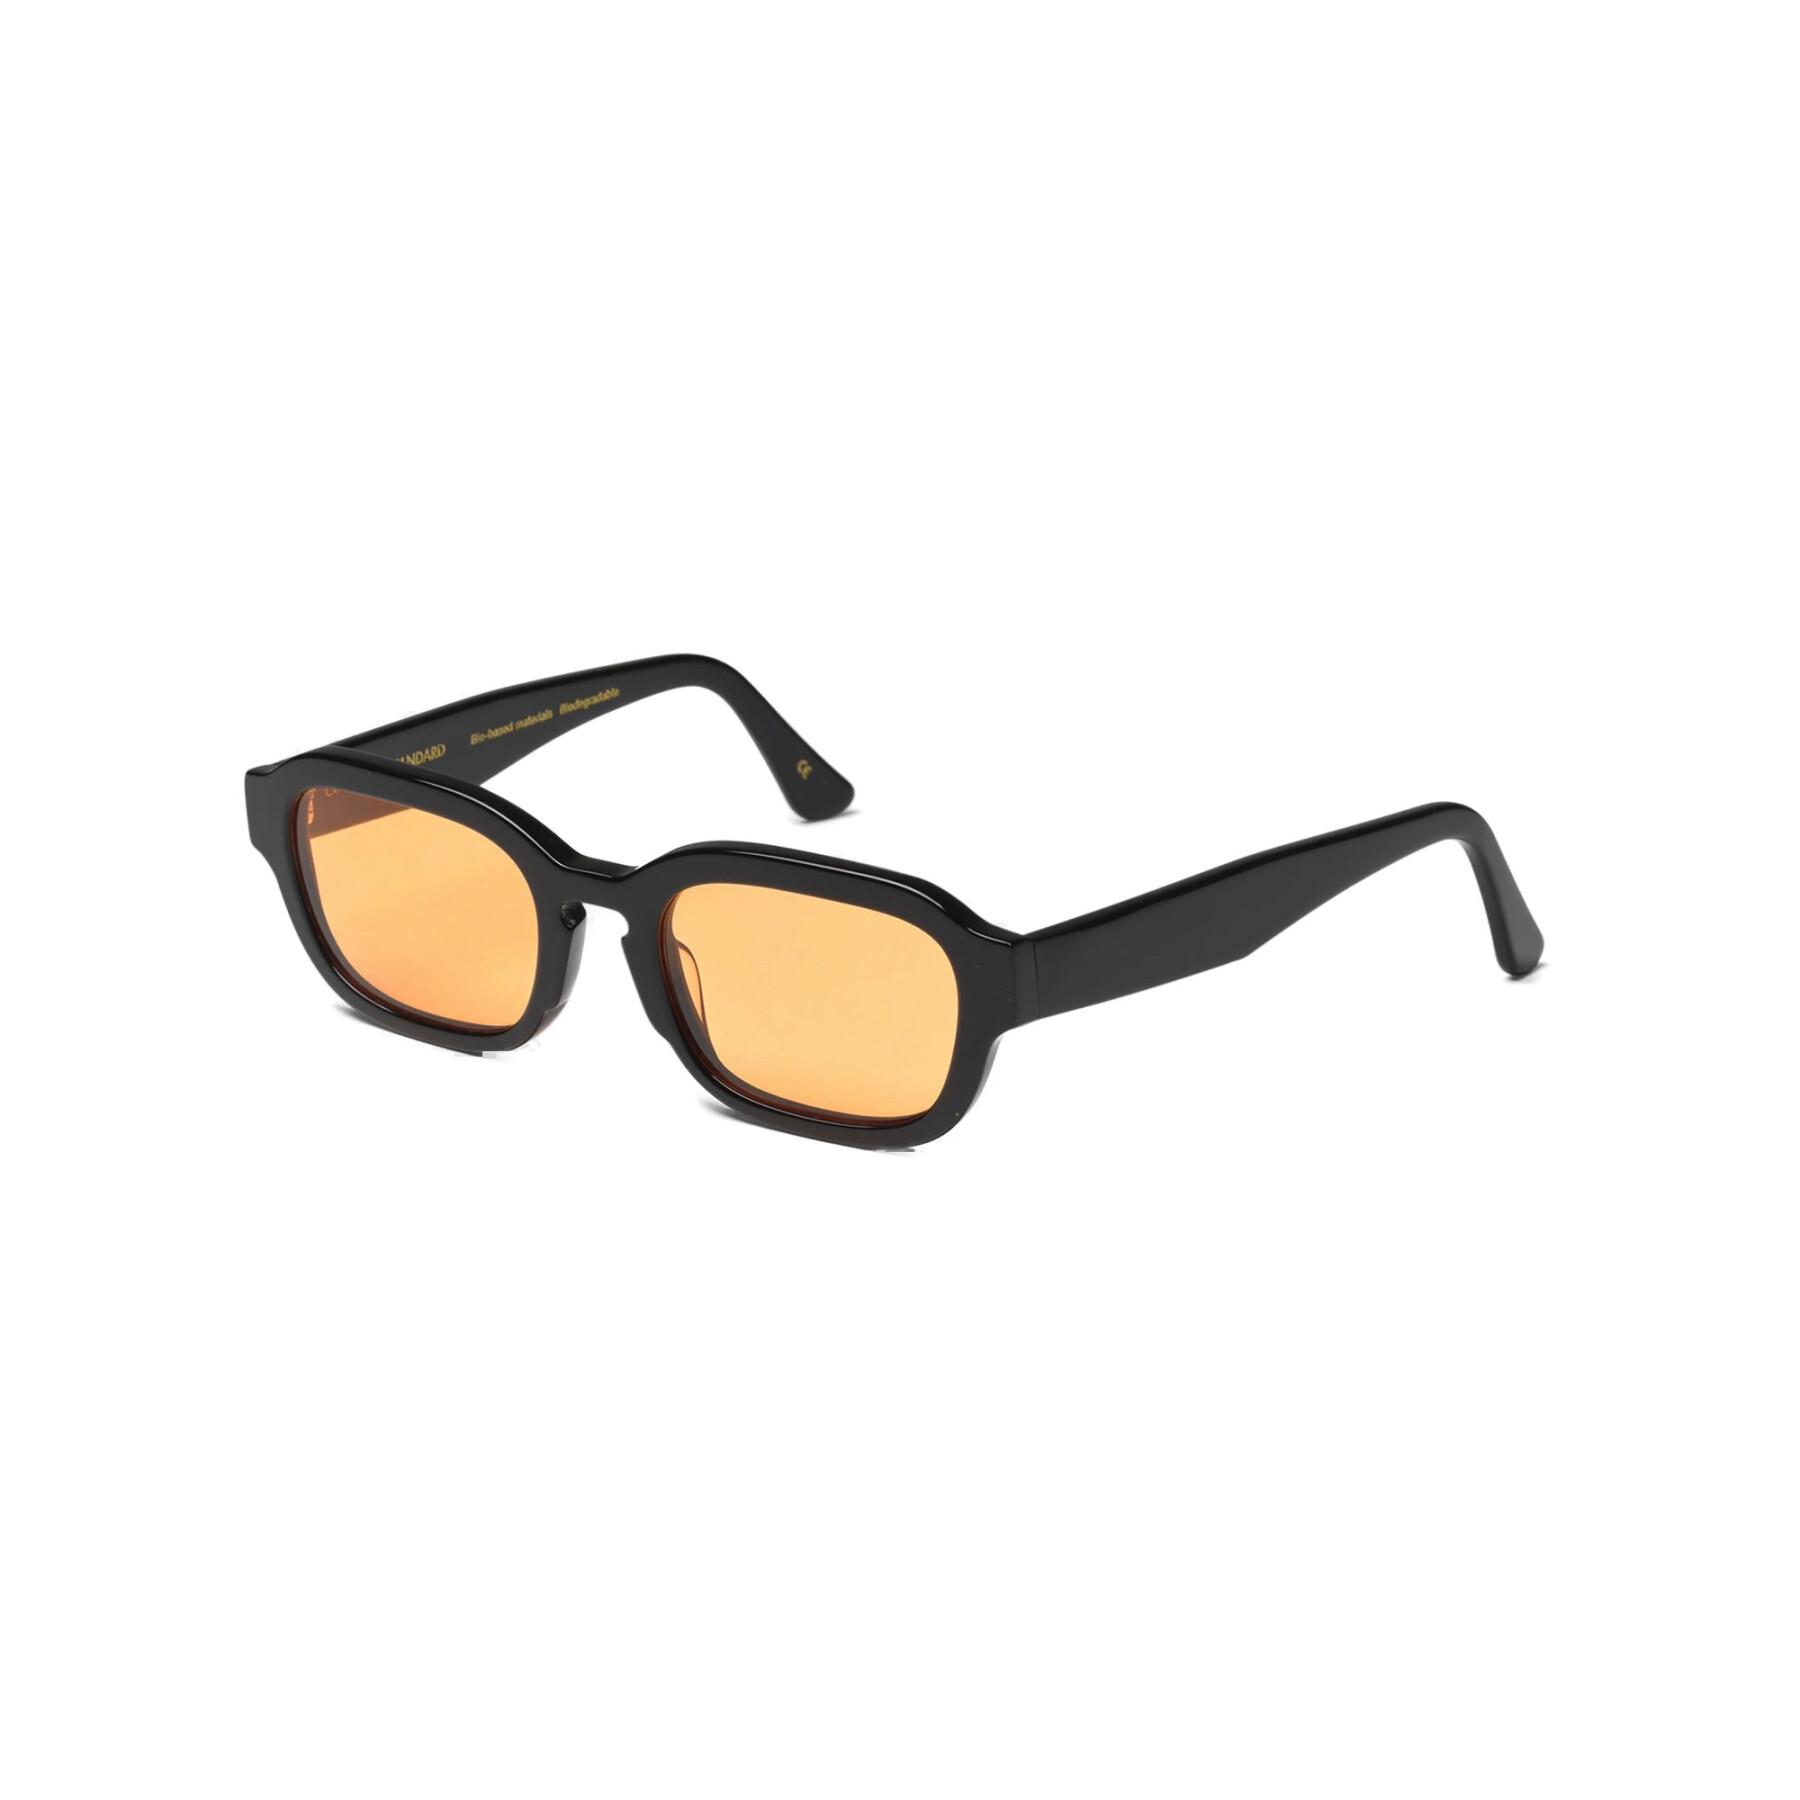 Okulary przeciwsłoneczne Colorful Standard 01 deep black solid/orange